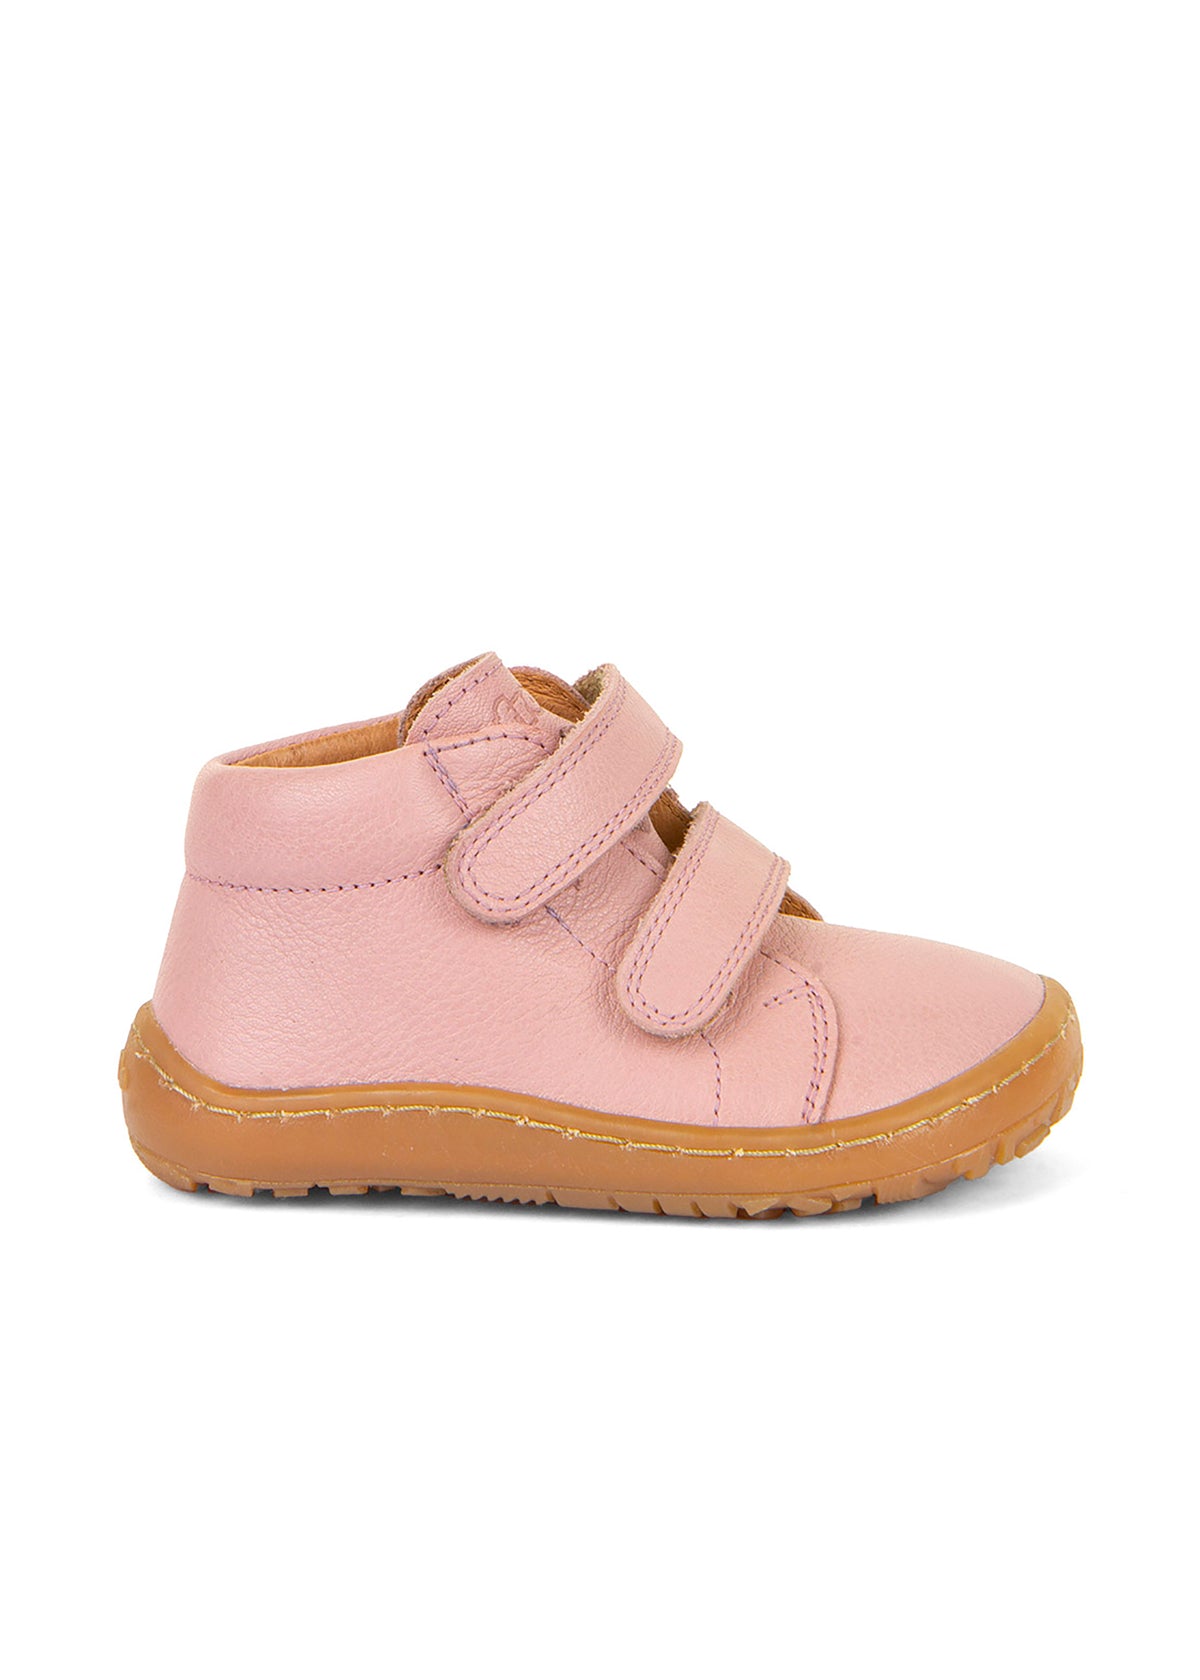 Barfotaskor för barn - rosa läder, Barefoot First Step